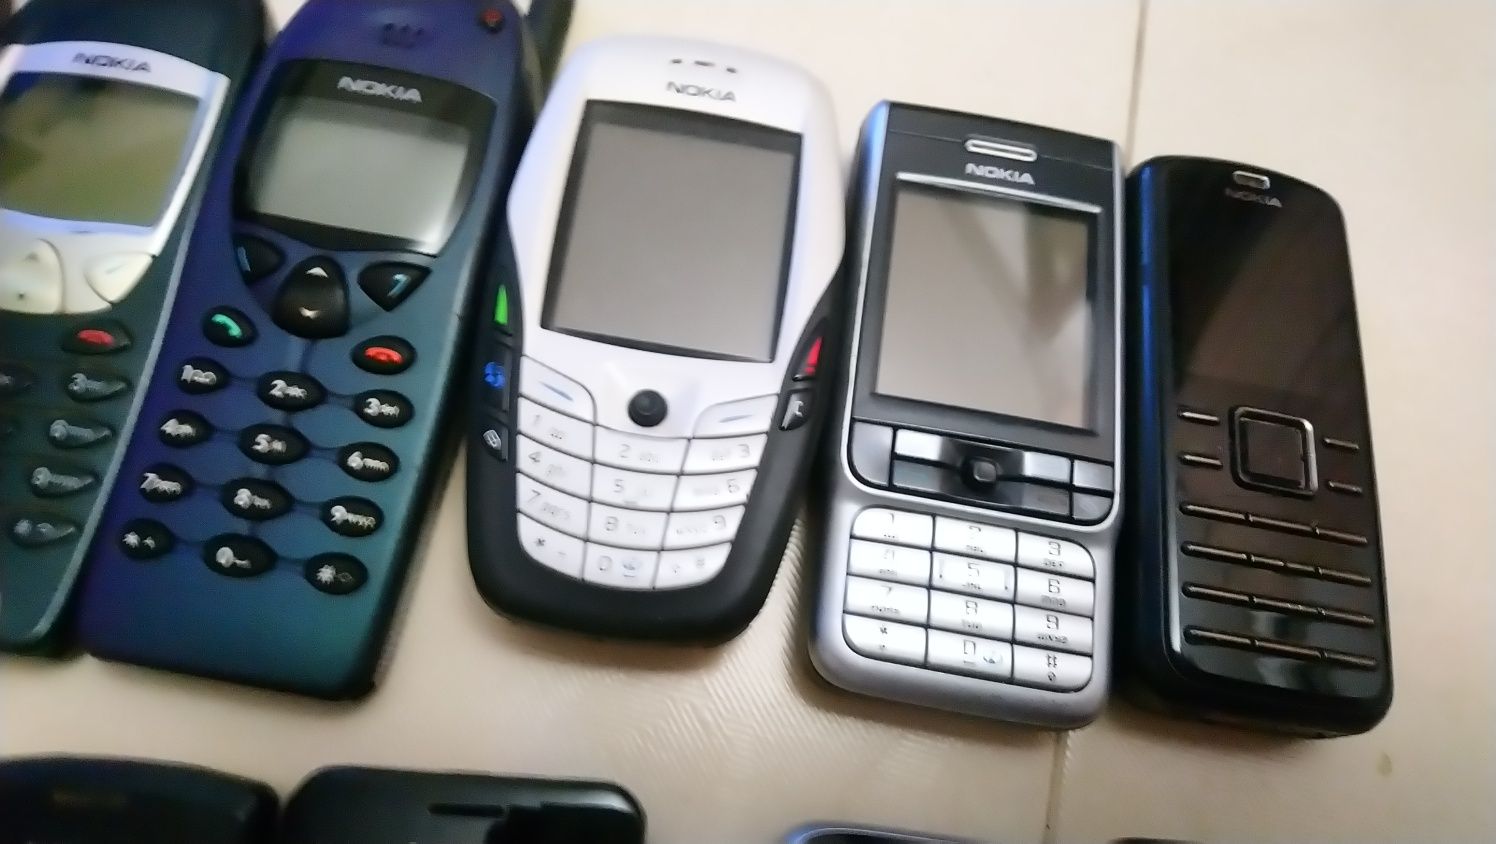 Nokia/Нокия N70,3210,7390,6110,6600,3230,C3,2600,2630,X1,206,2710,6720